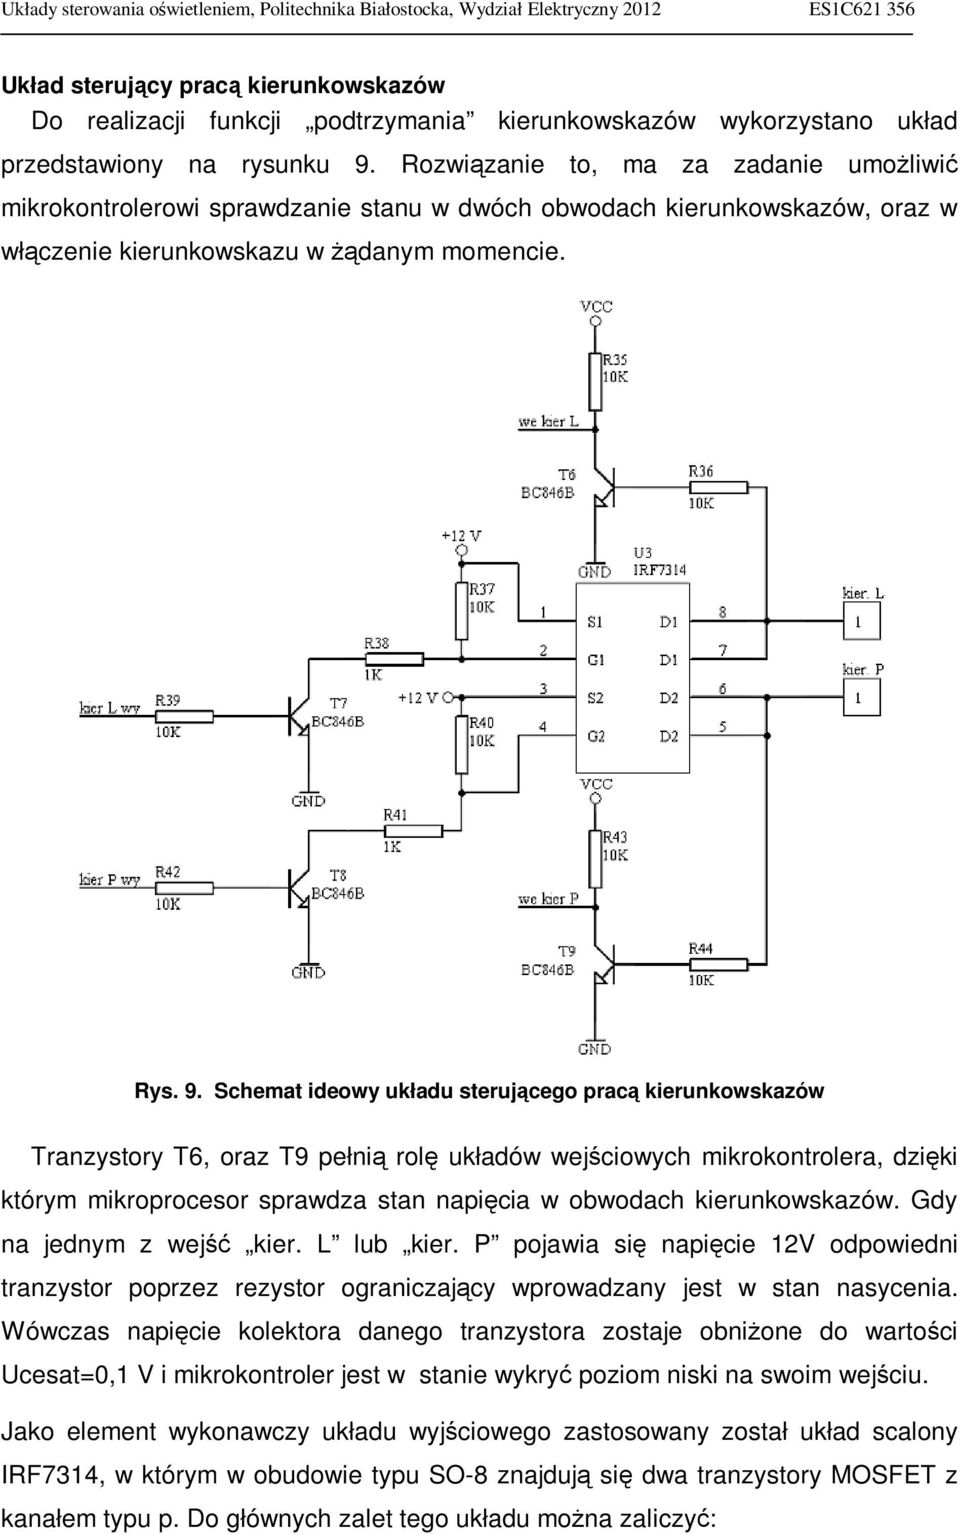 Schemat ideowy układu sterującego pracą kierunkowskazów Tranzystory T6, oraz T9 pełnią rolę układów wejściowych mikrokontrolera, dzięki którym mikroprocesor sprawdza stan napięcia w obwodach